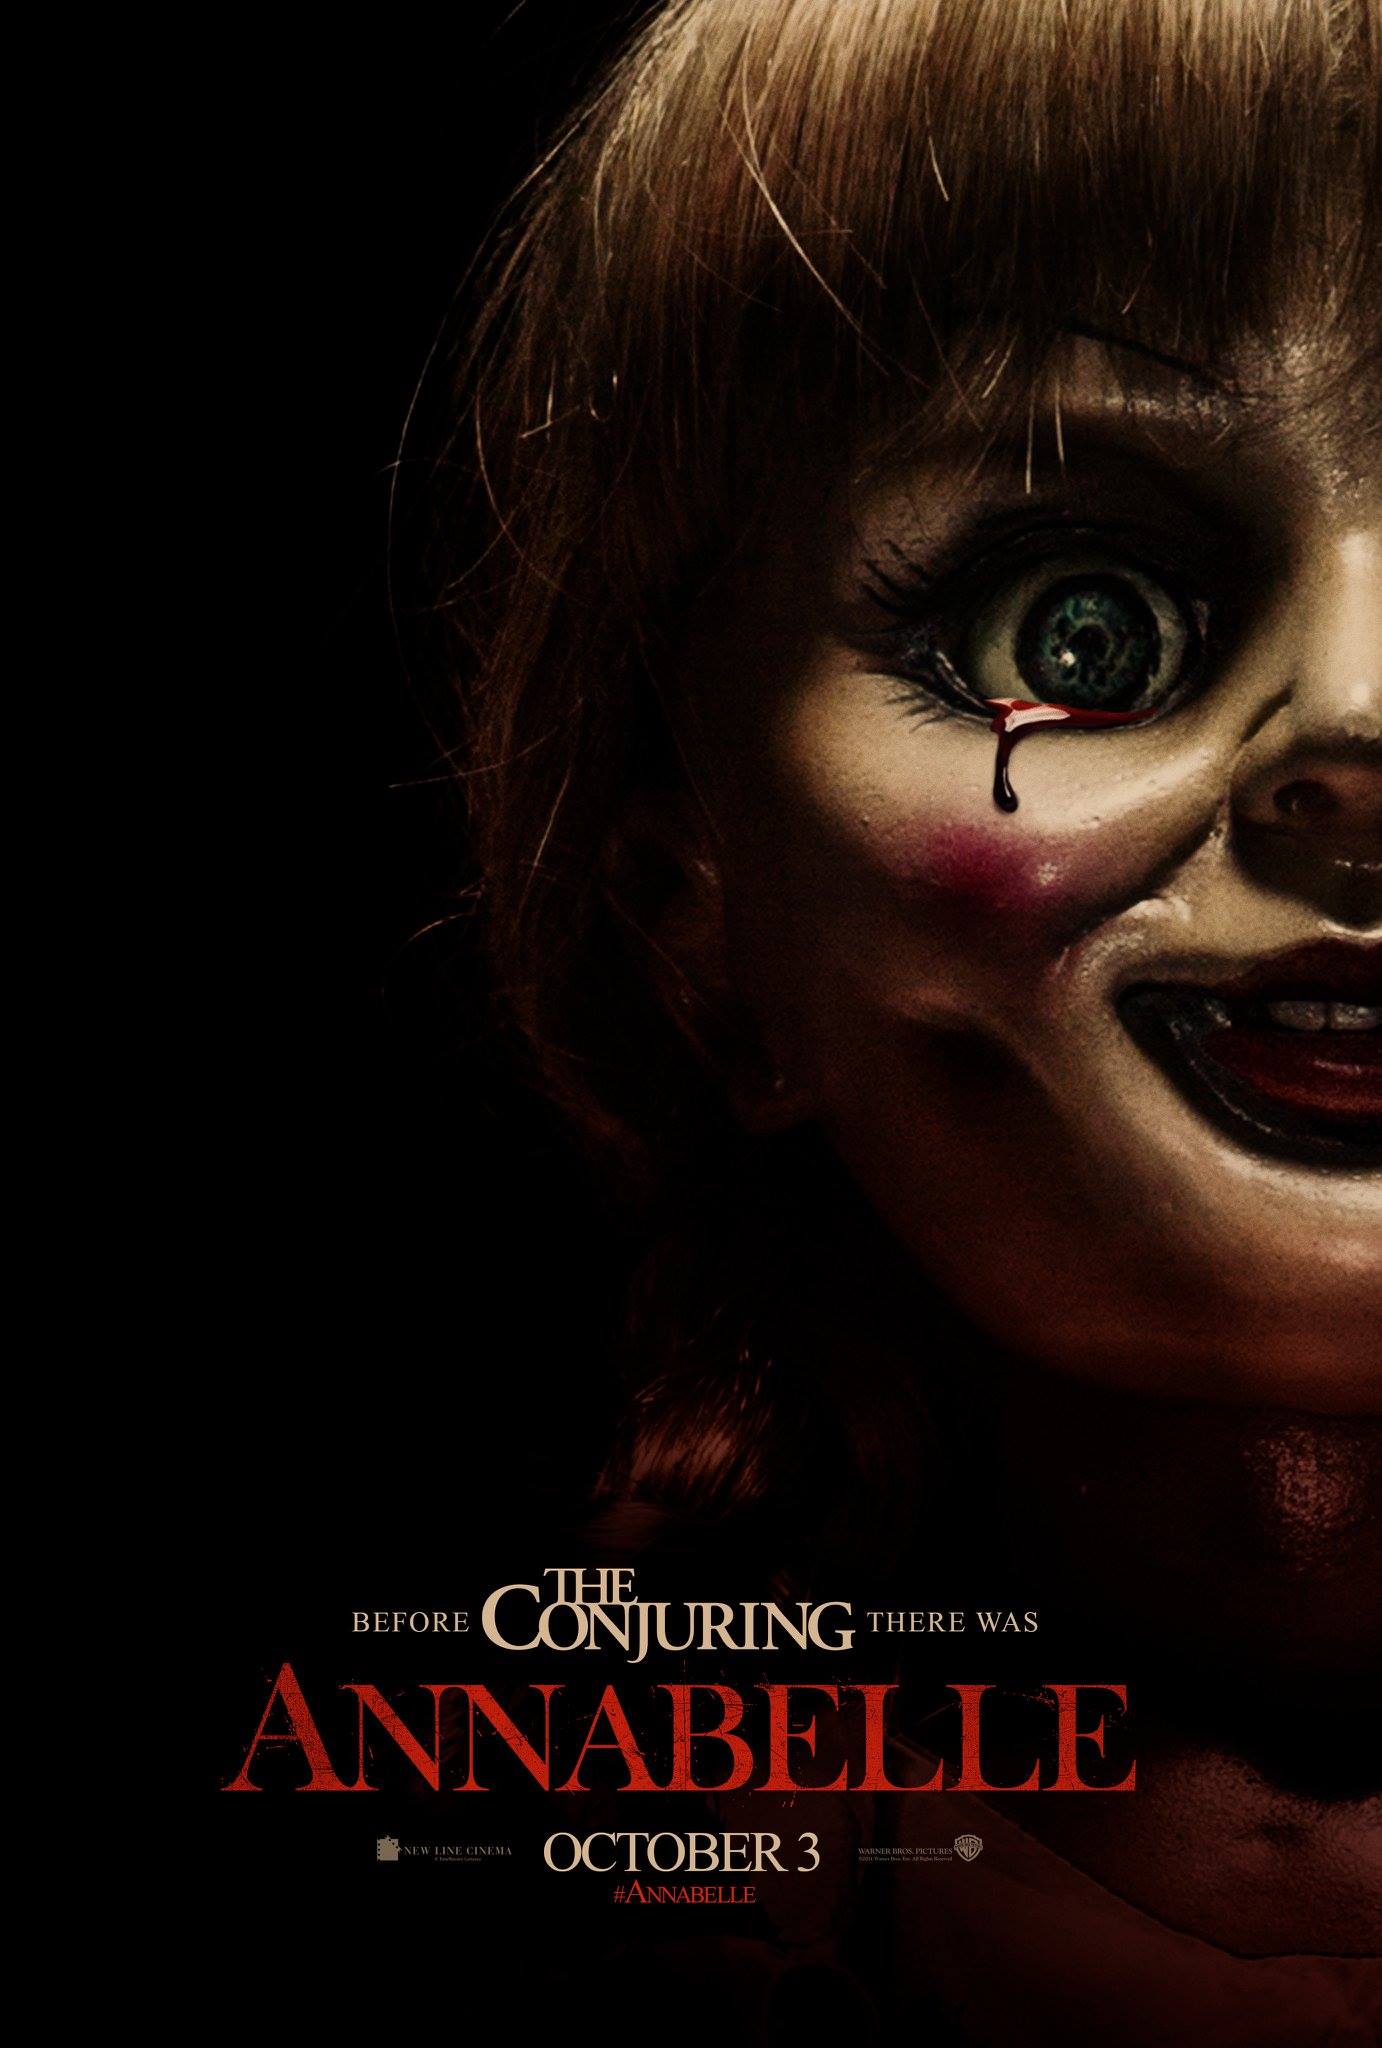 Annabelle Full Movie 2014